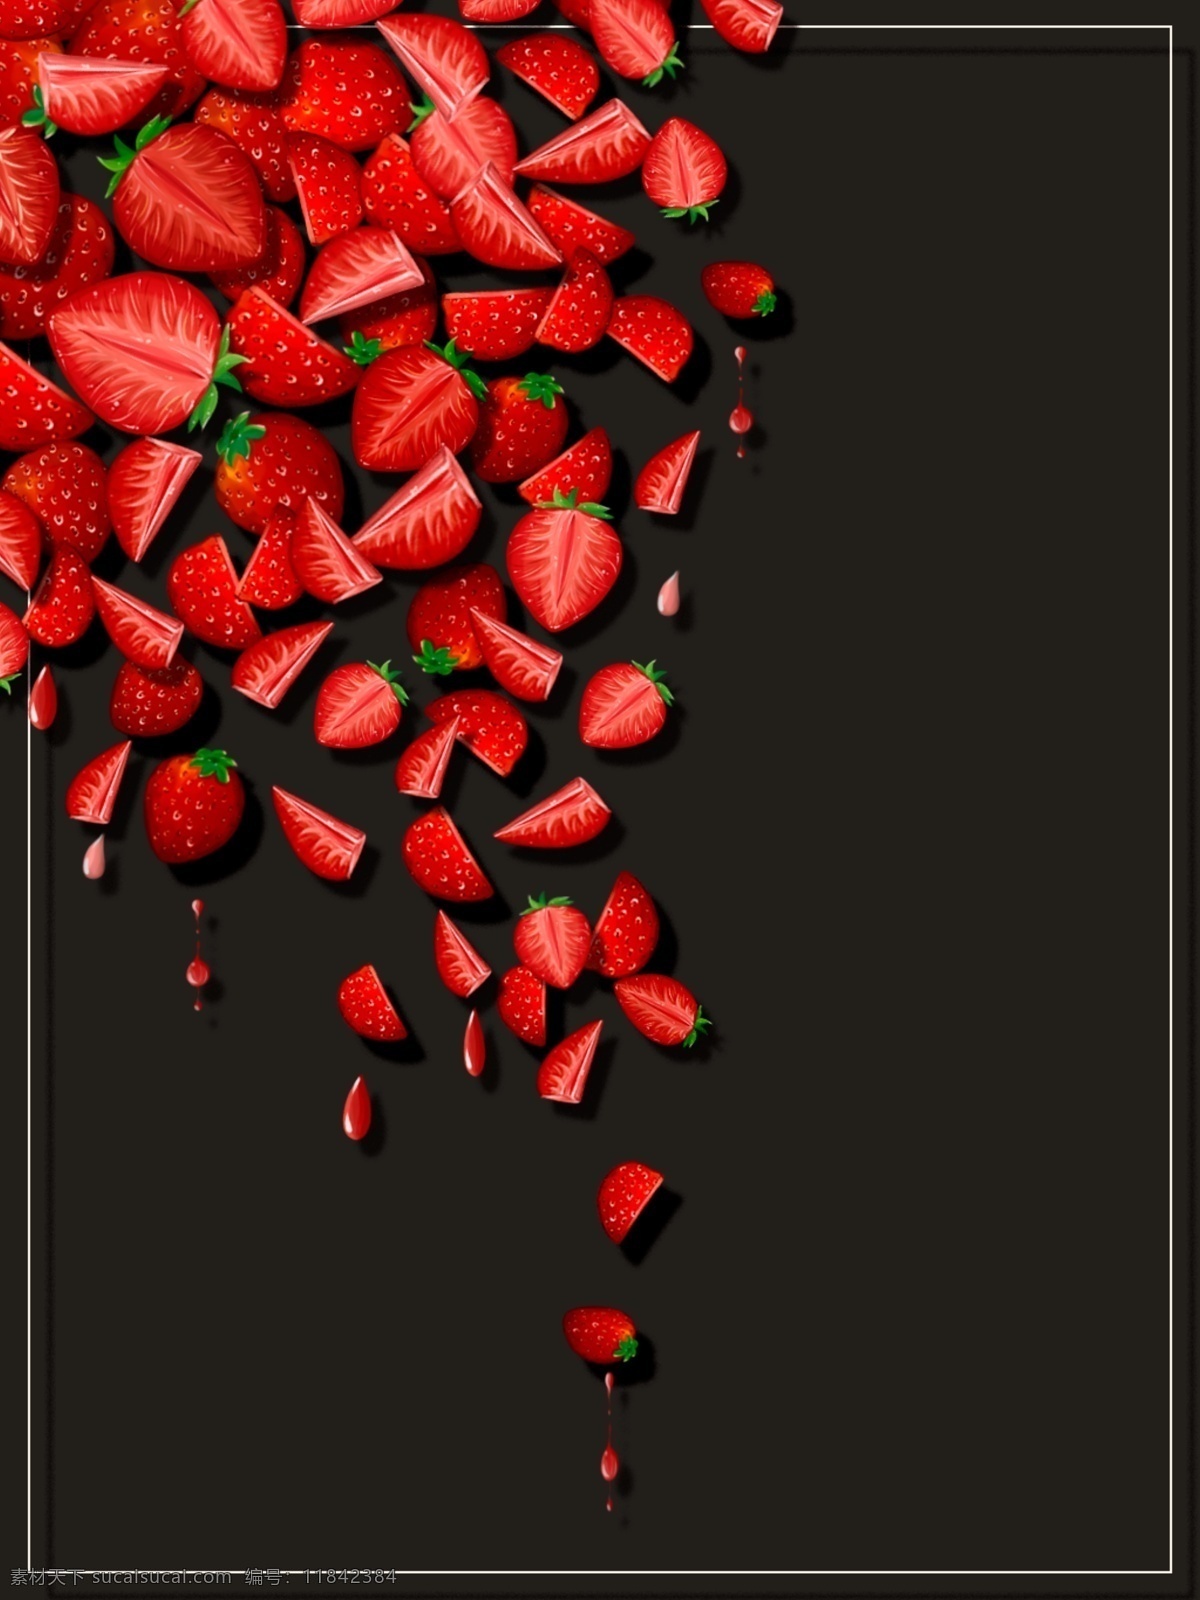 纯 手绘 原创 红色 草莓 小 清新 水果 食物 黑色 背景 边框 小清新 黑色背景 纯原创 纯手绘 可爱草莓